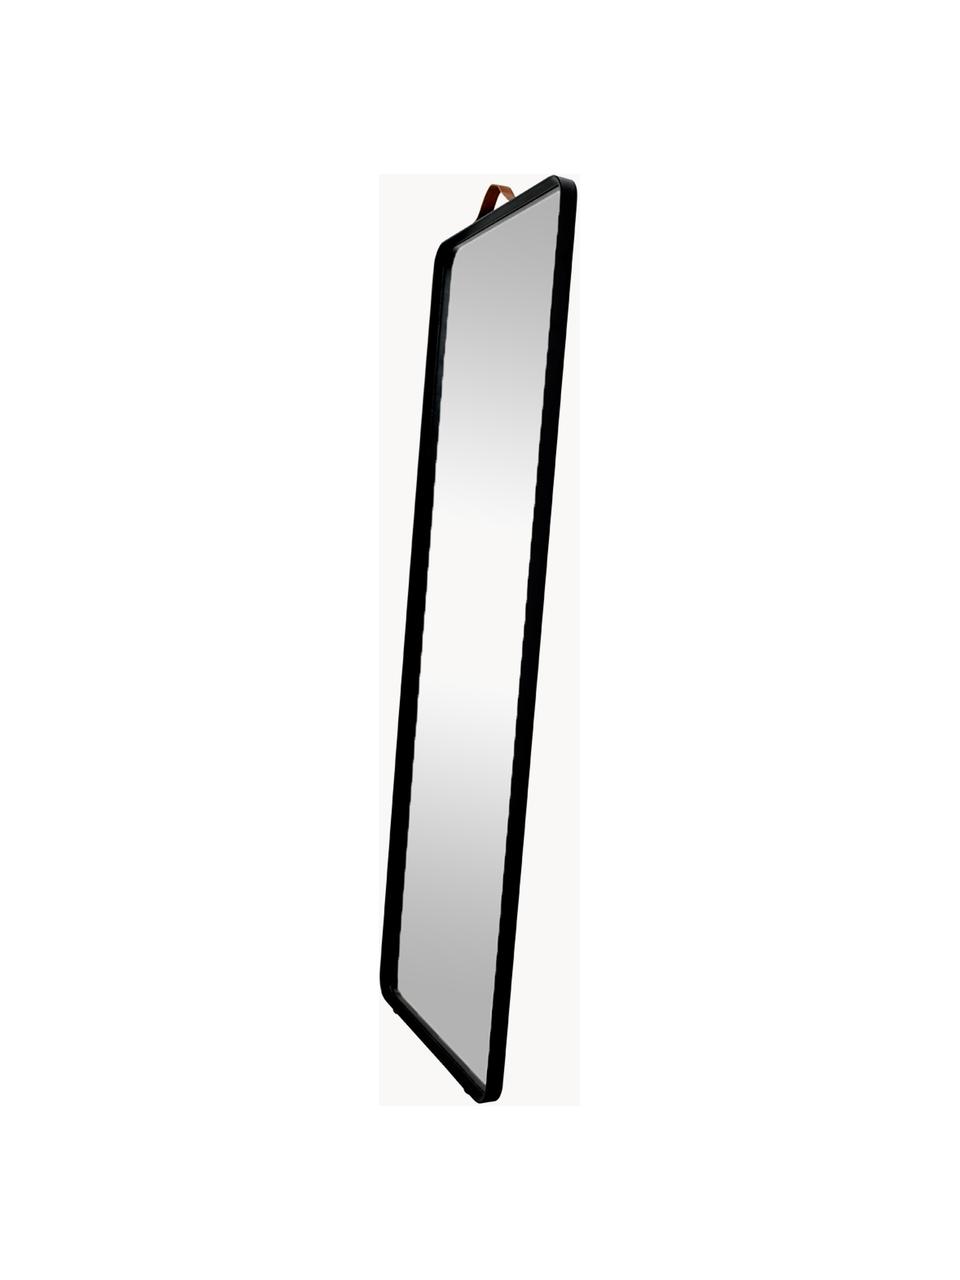 Eckiger Wandspiegel Norm mit schwarzem Aluminiumrahmen, Rahmen: Aluminium, pulverbeschich, Griff: Leder, Spiegelfläche: Spiegelglas, Schwarz, B 60 x H 170 cm